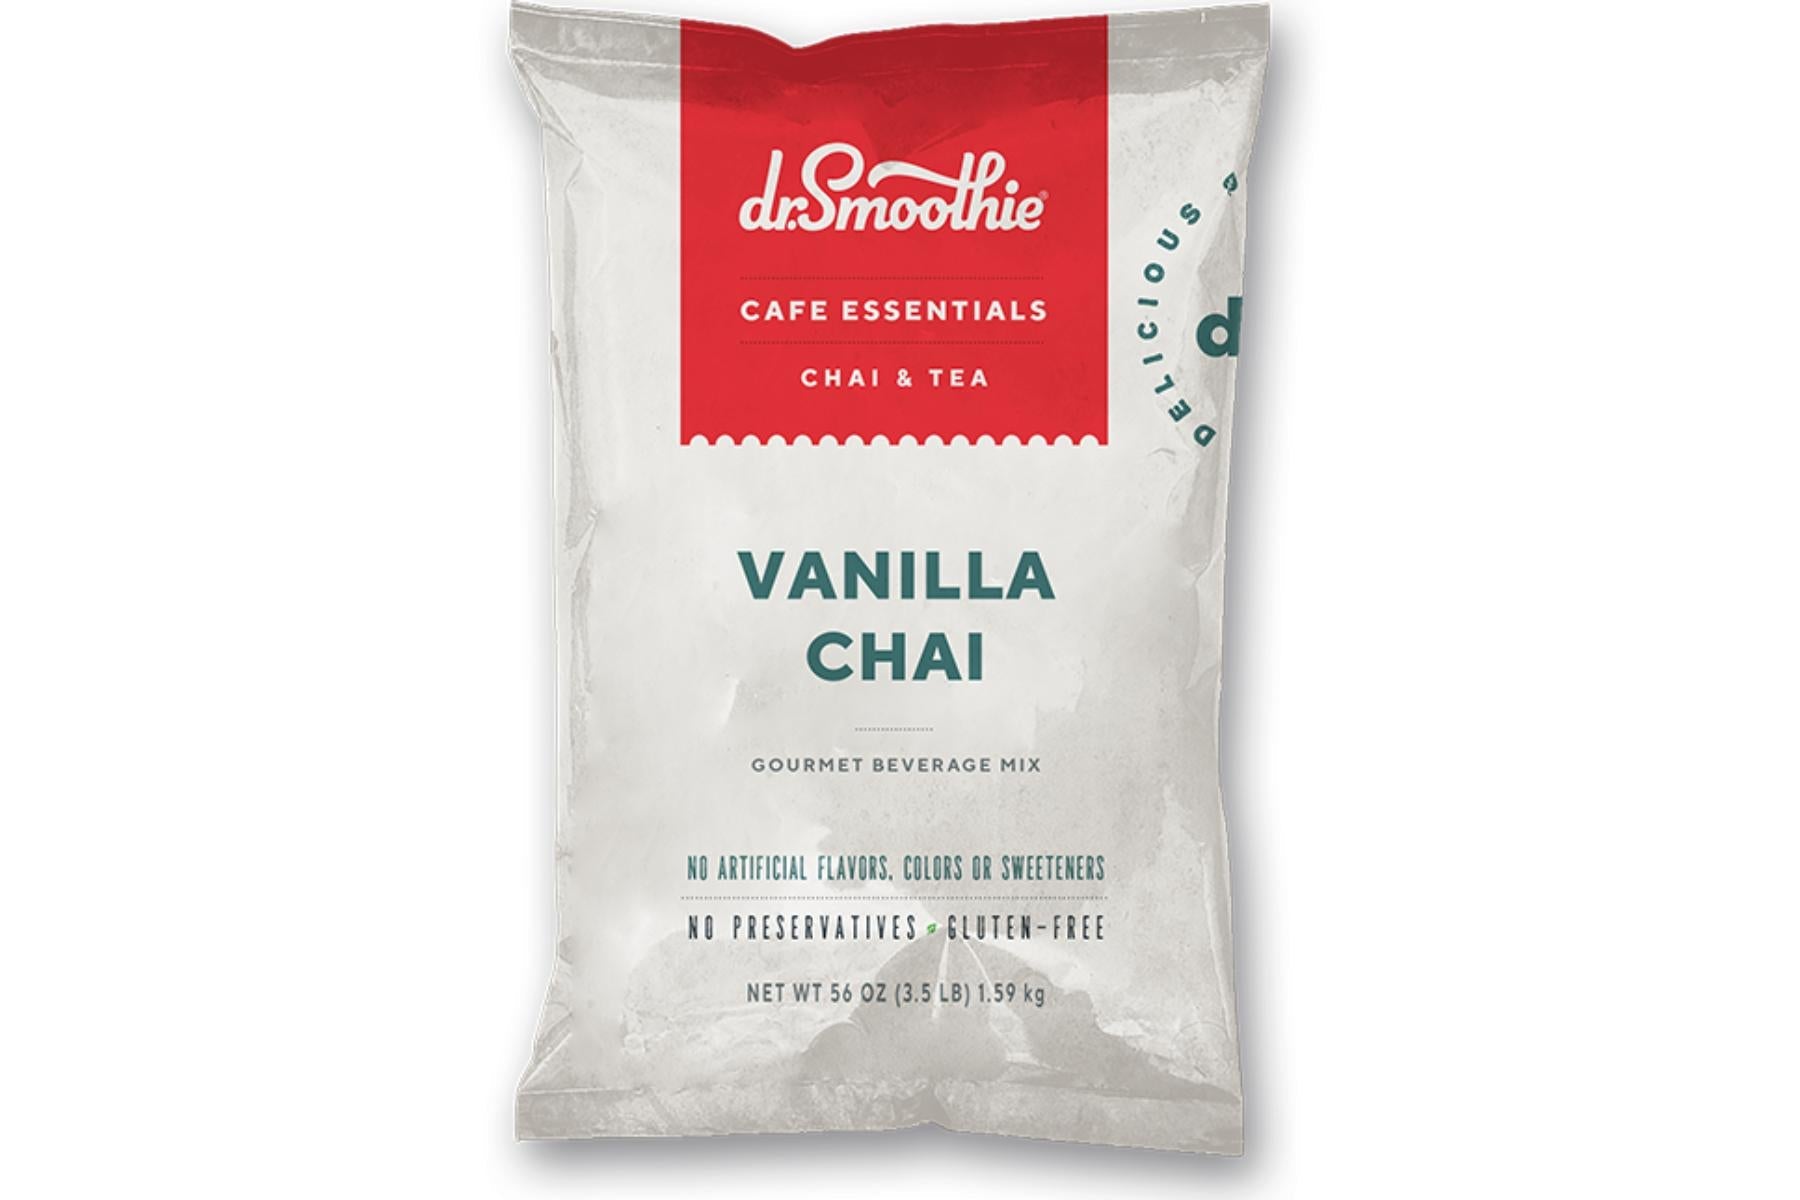 Dr. Smoothie Cafe Essentials Chai & Tea - 3.5lb Bulk Bag: Vanilla Chai